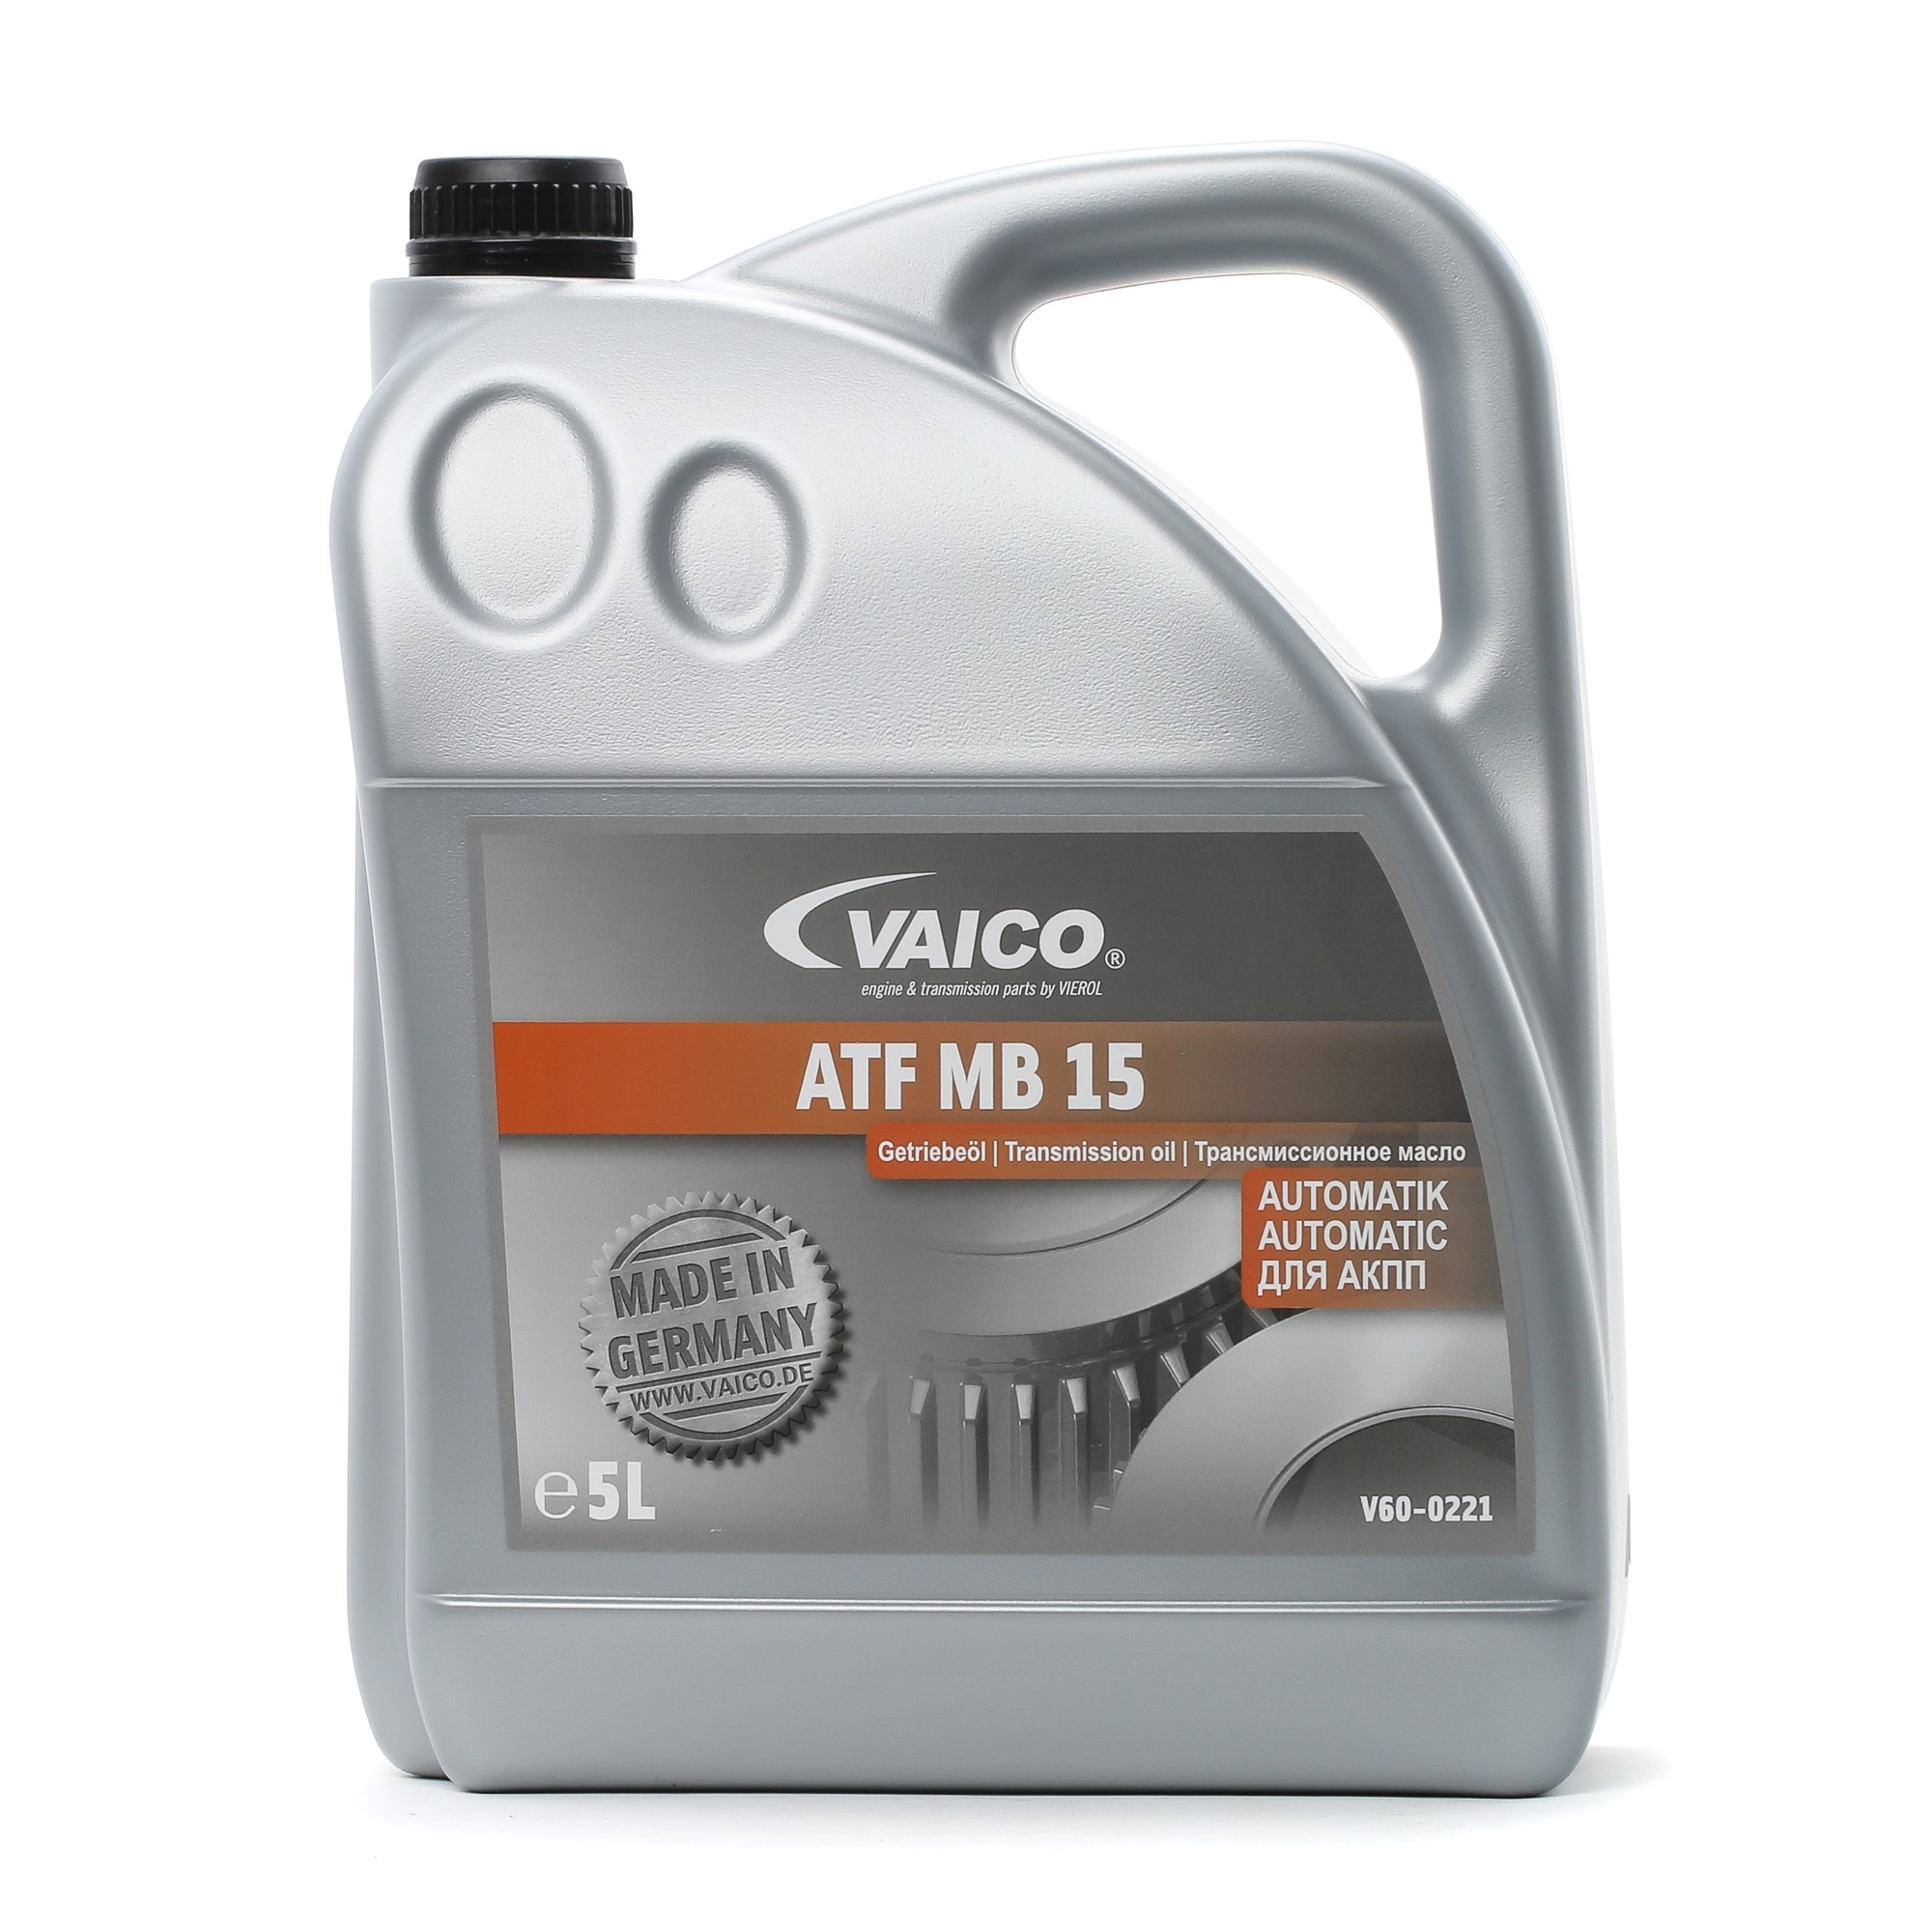 VAICO Automatikgetriebeöl V60-0221